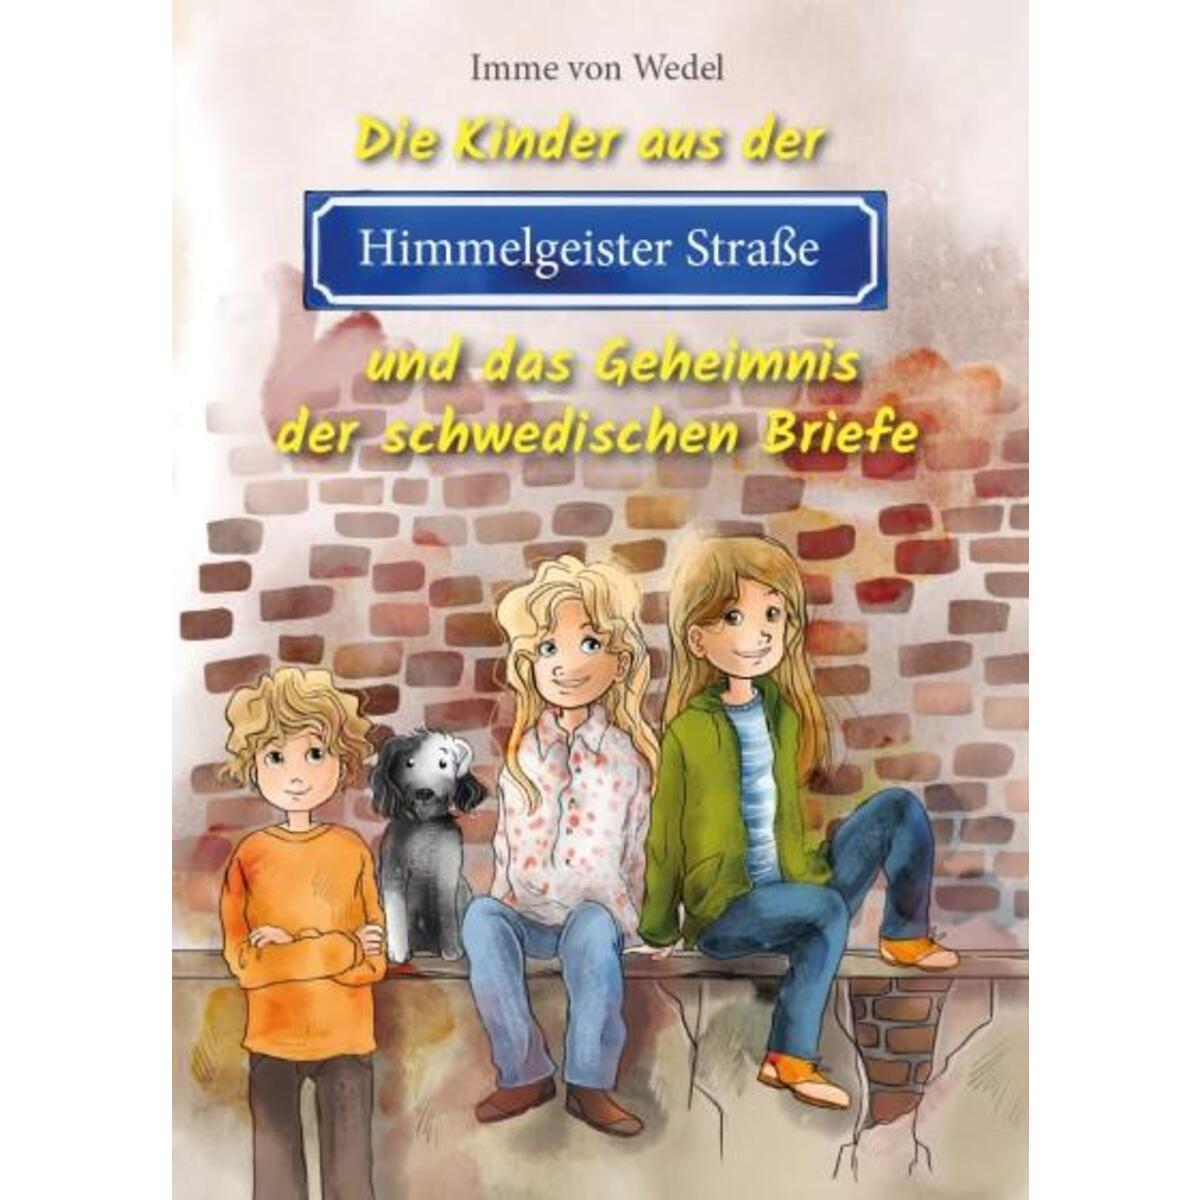 Die Kinder aus der Himmelgeister Straße und das Geheimnis der schwedischen Brief... von Verlag Murken-Altrogge